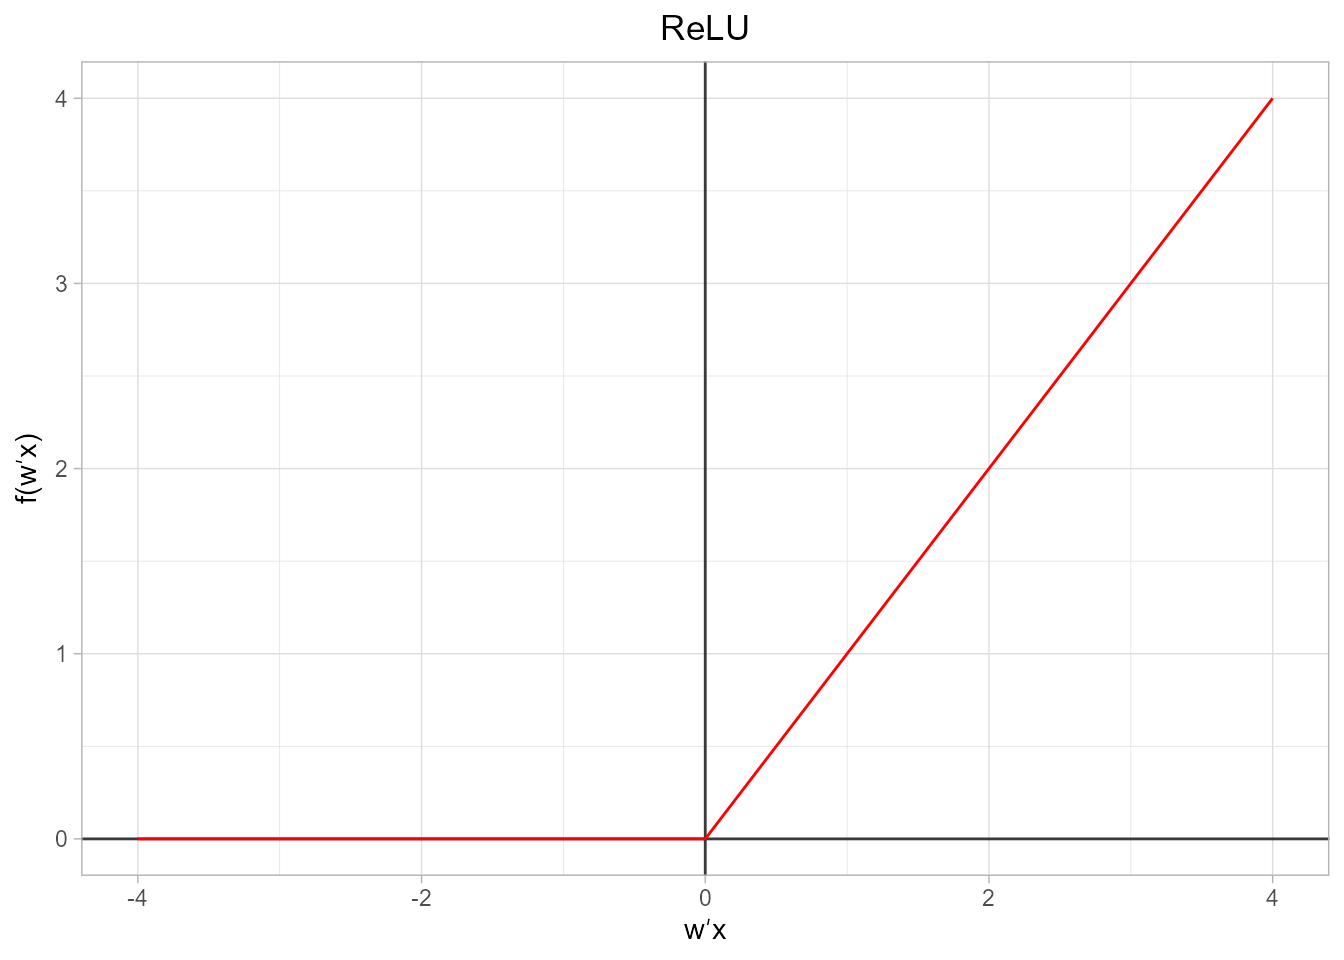 Representación gráfica de la función ReLU.